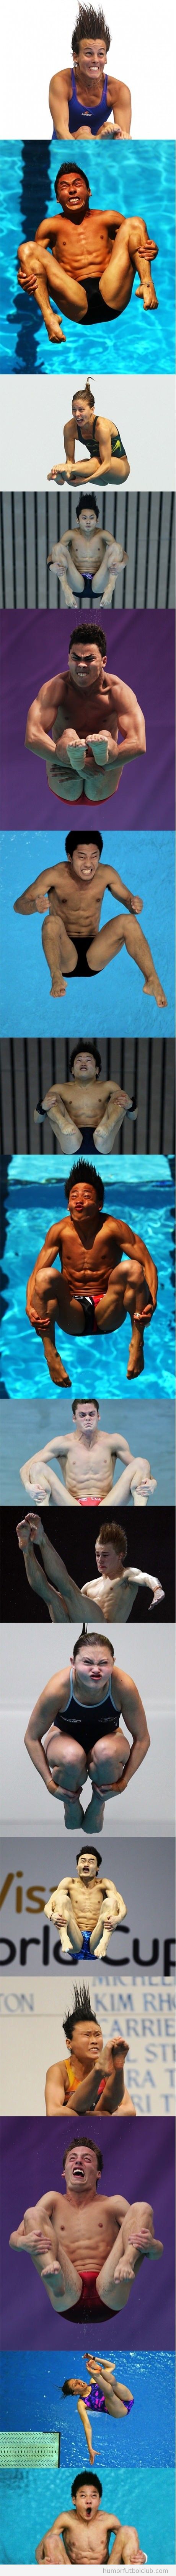 Fotos graciosas de las caras de los nadadores de salto trampolín Juegos Olímpicos 2912